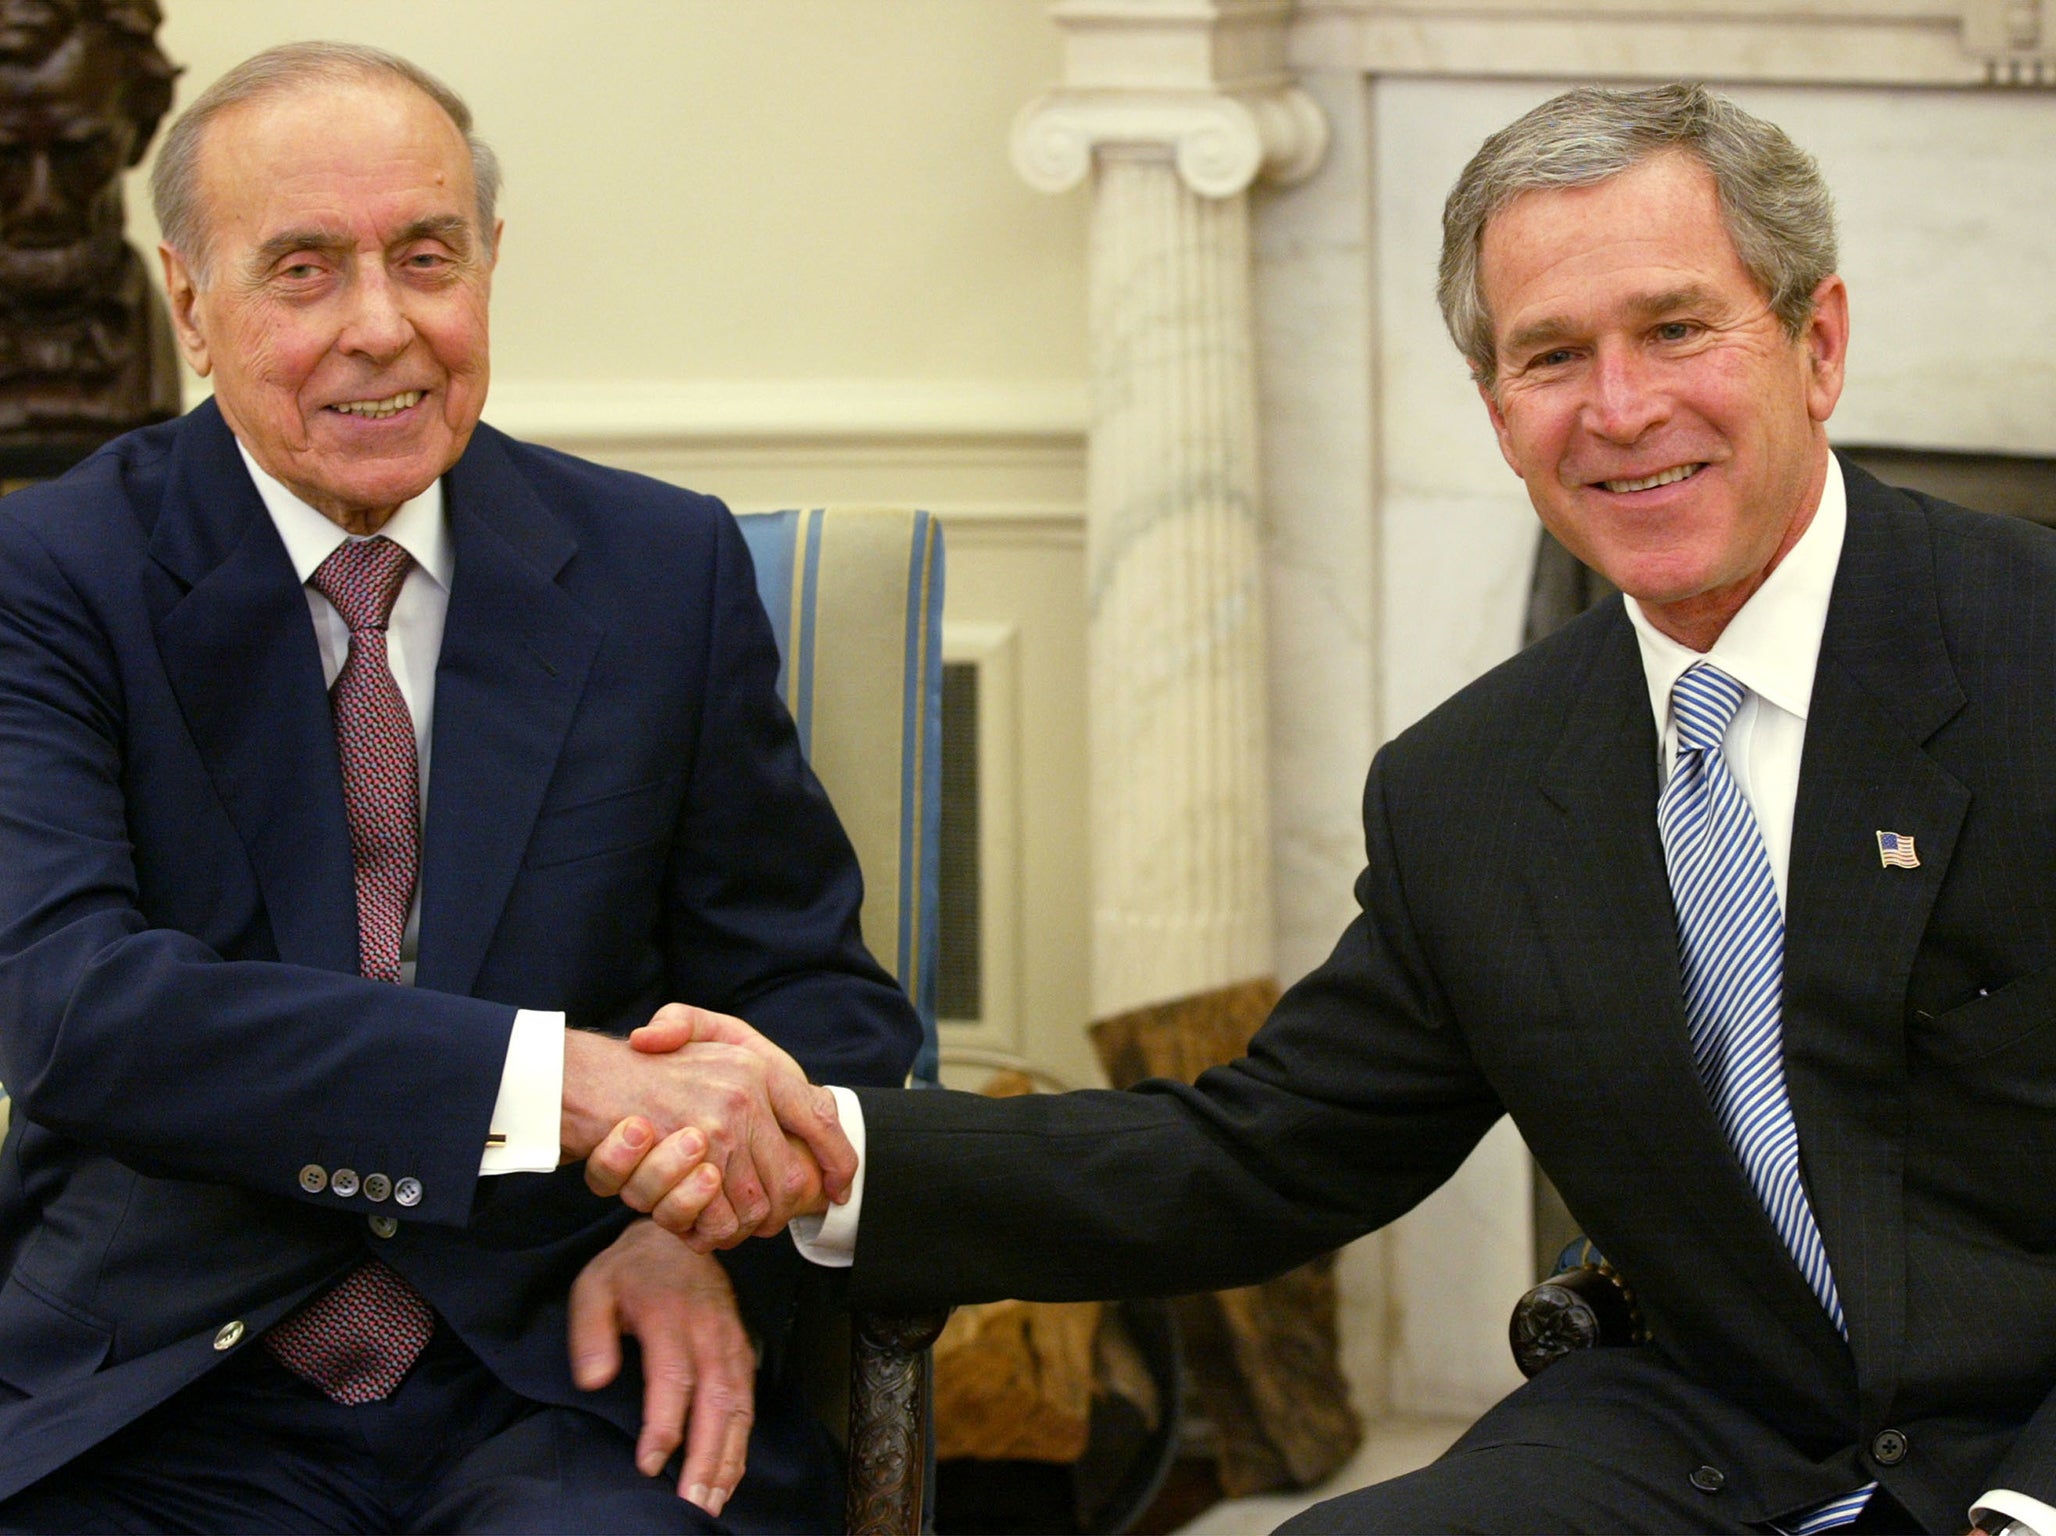 The late Heydar Aliyev with George W. Bush